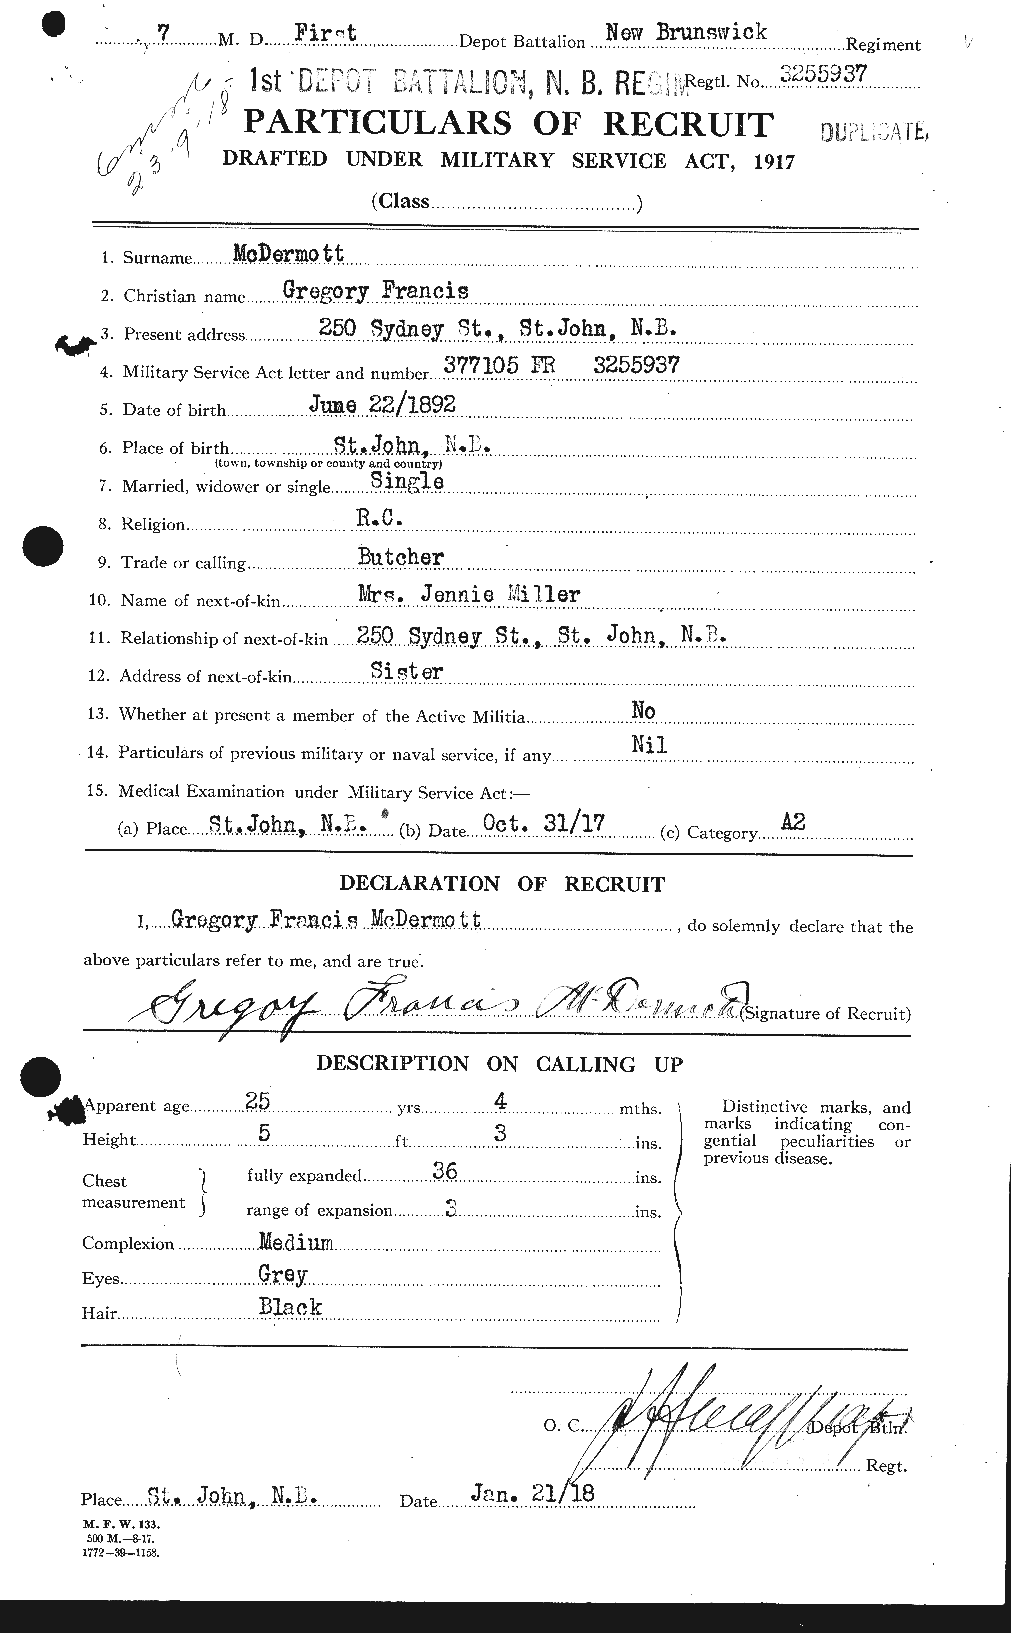 Dossiers du Personnel de la Première Guerre mondiale - CEC 135843a